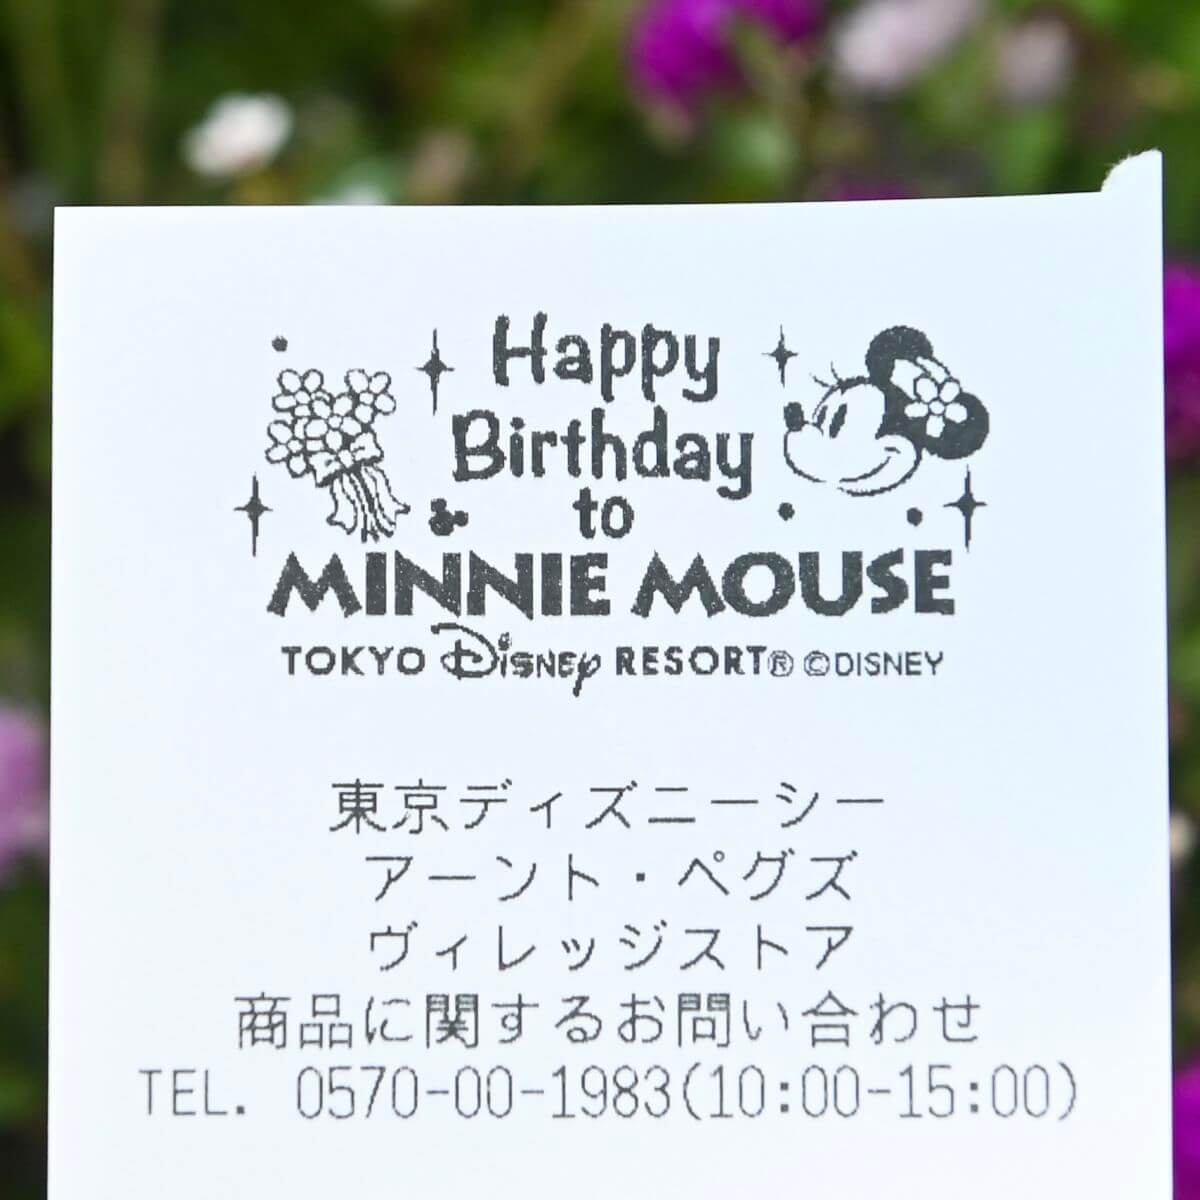 ミッキーとミニーが誕生日をお祝い 東京ディズニーランド11月限定レシート